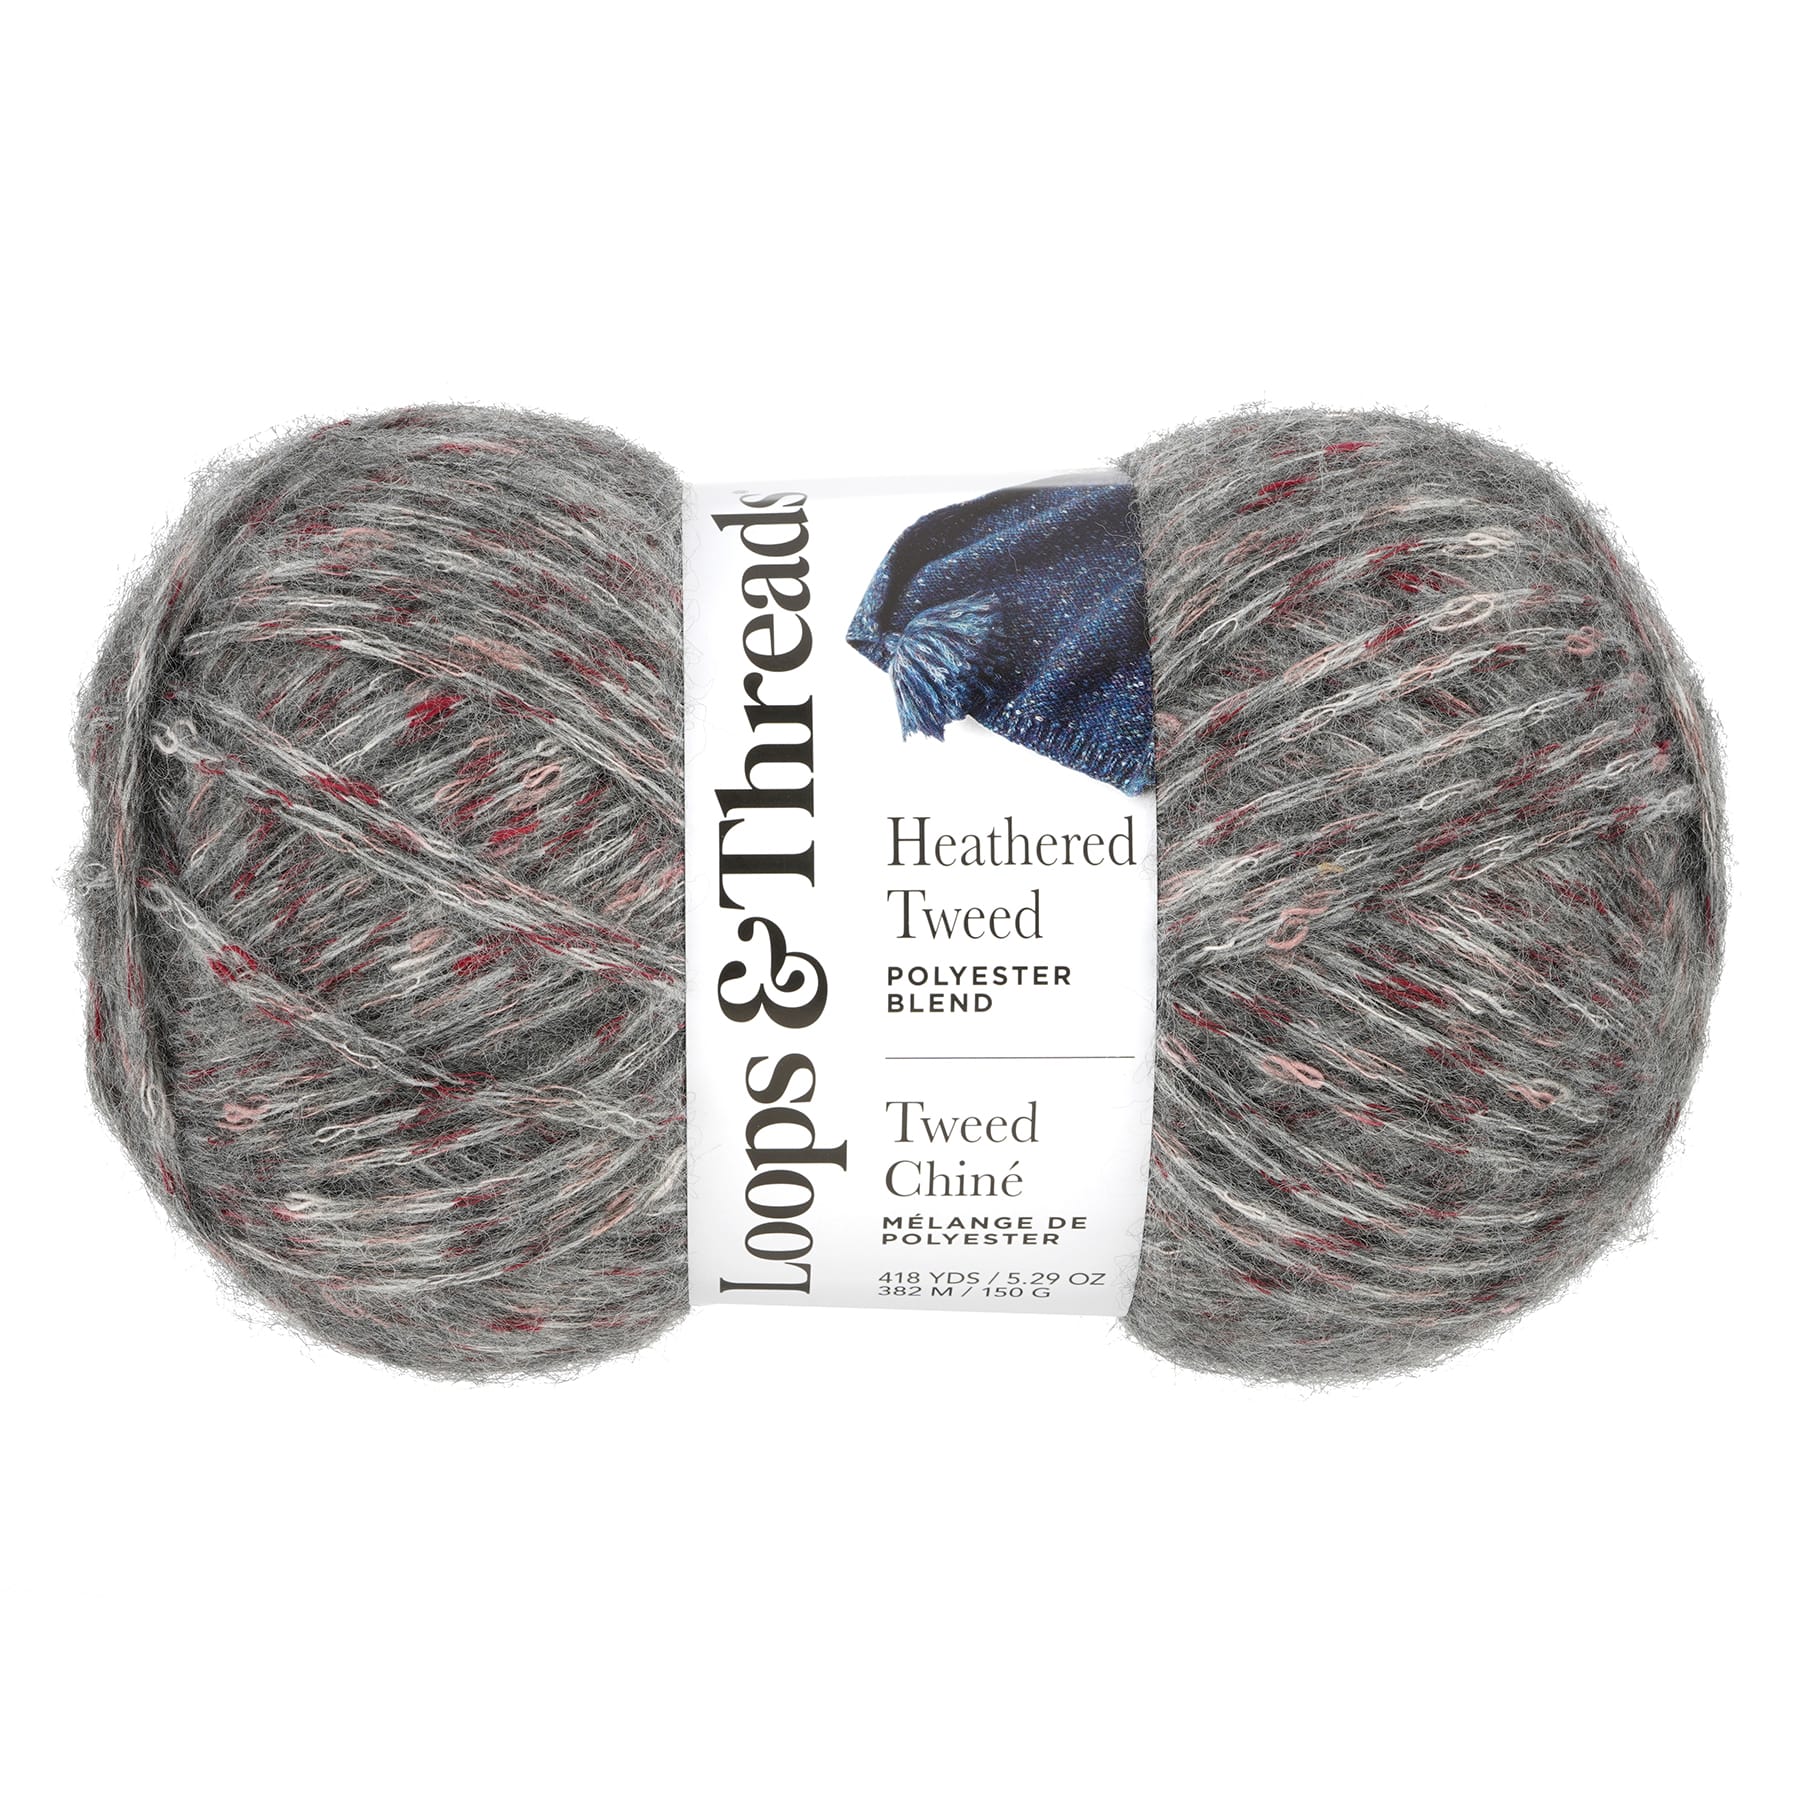 Loops & Thread Black Yarn. Crochet, Knit, Craft Yarn